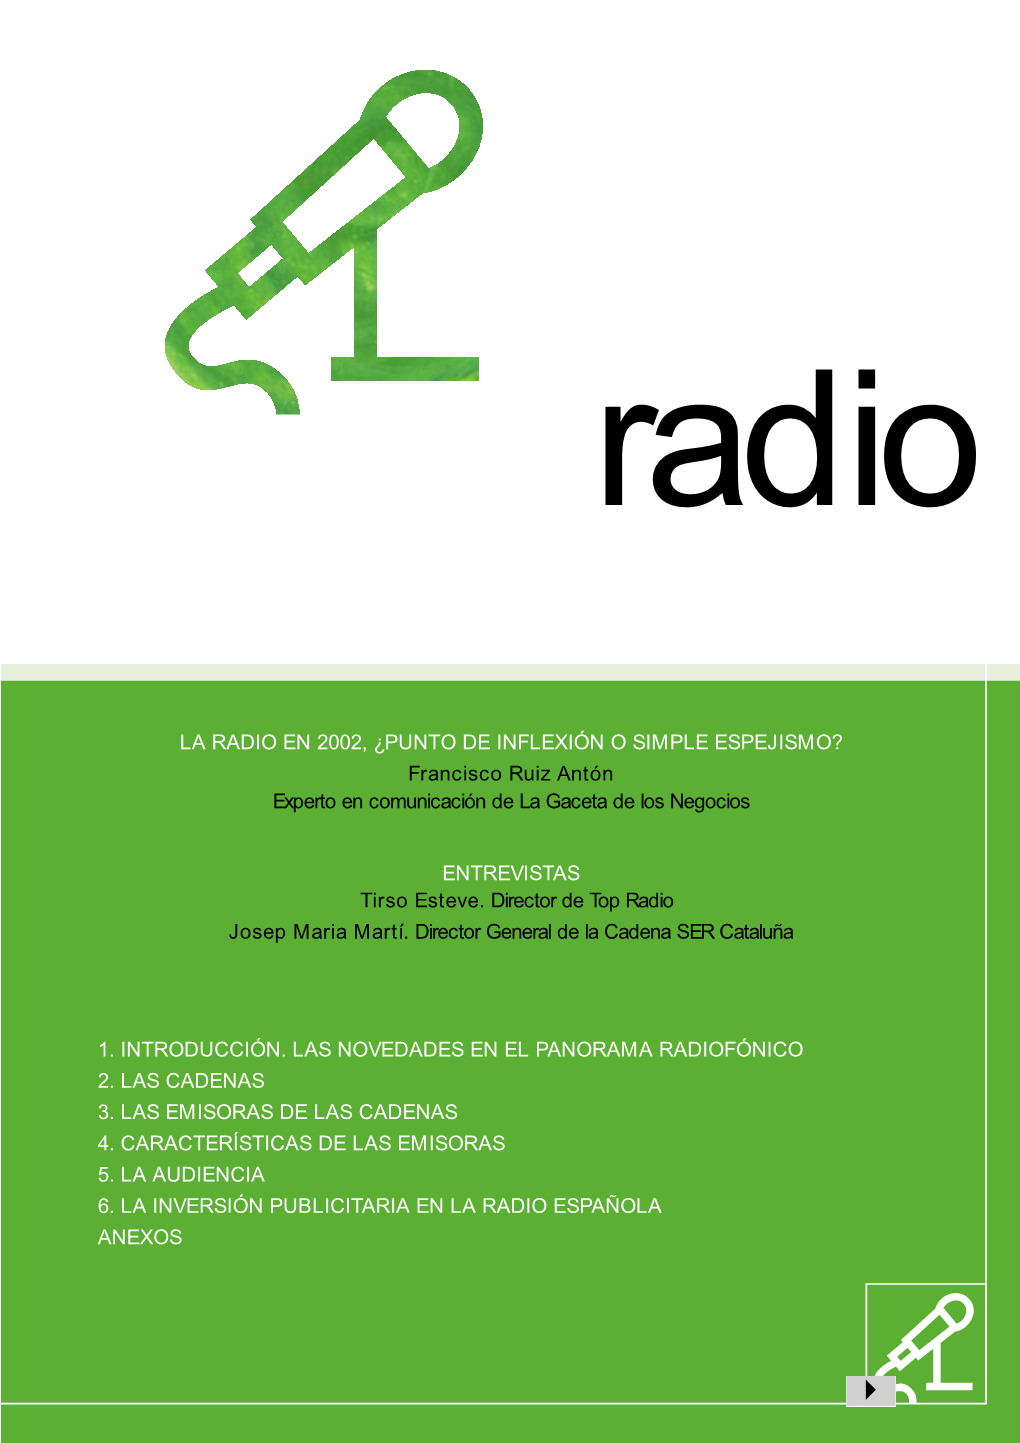 LA RADIO EN 2002, ¿PUNTO DE INFLEXIÓN O SIMPLE ESPEJISMO? Francisco Ruiz Antón Experto En Comunicación De La Gaceta De Los Negocios